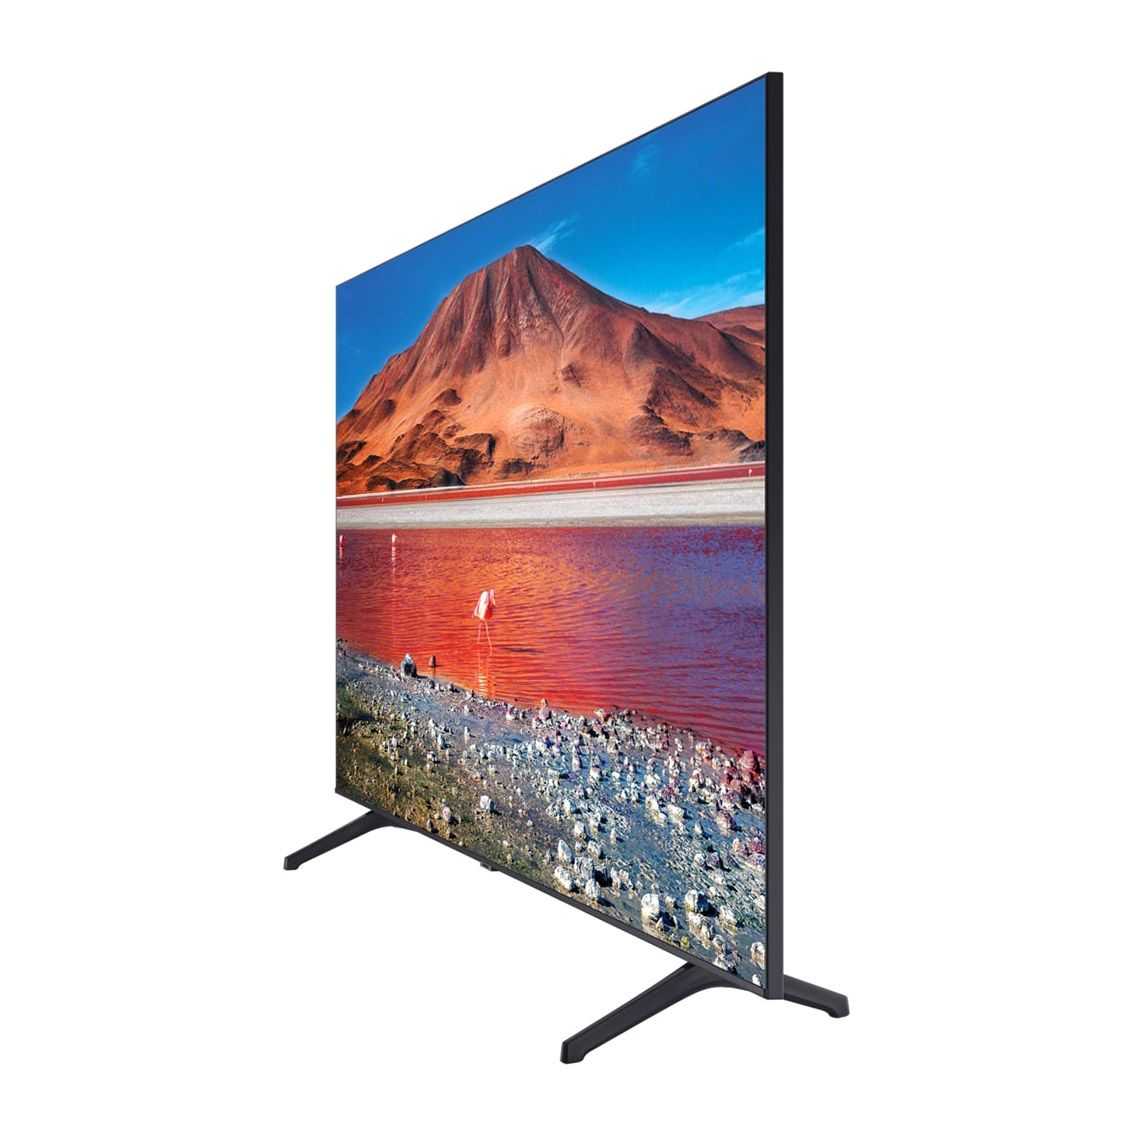 Обзор, тест и сравнение телевизоров samsung 43tu8000 и lg 43un8100 2020 года. - выбор телевизора